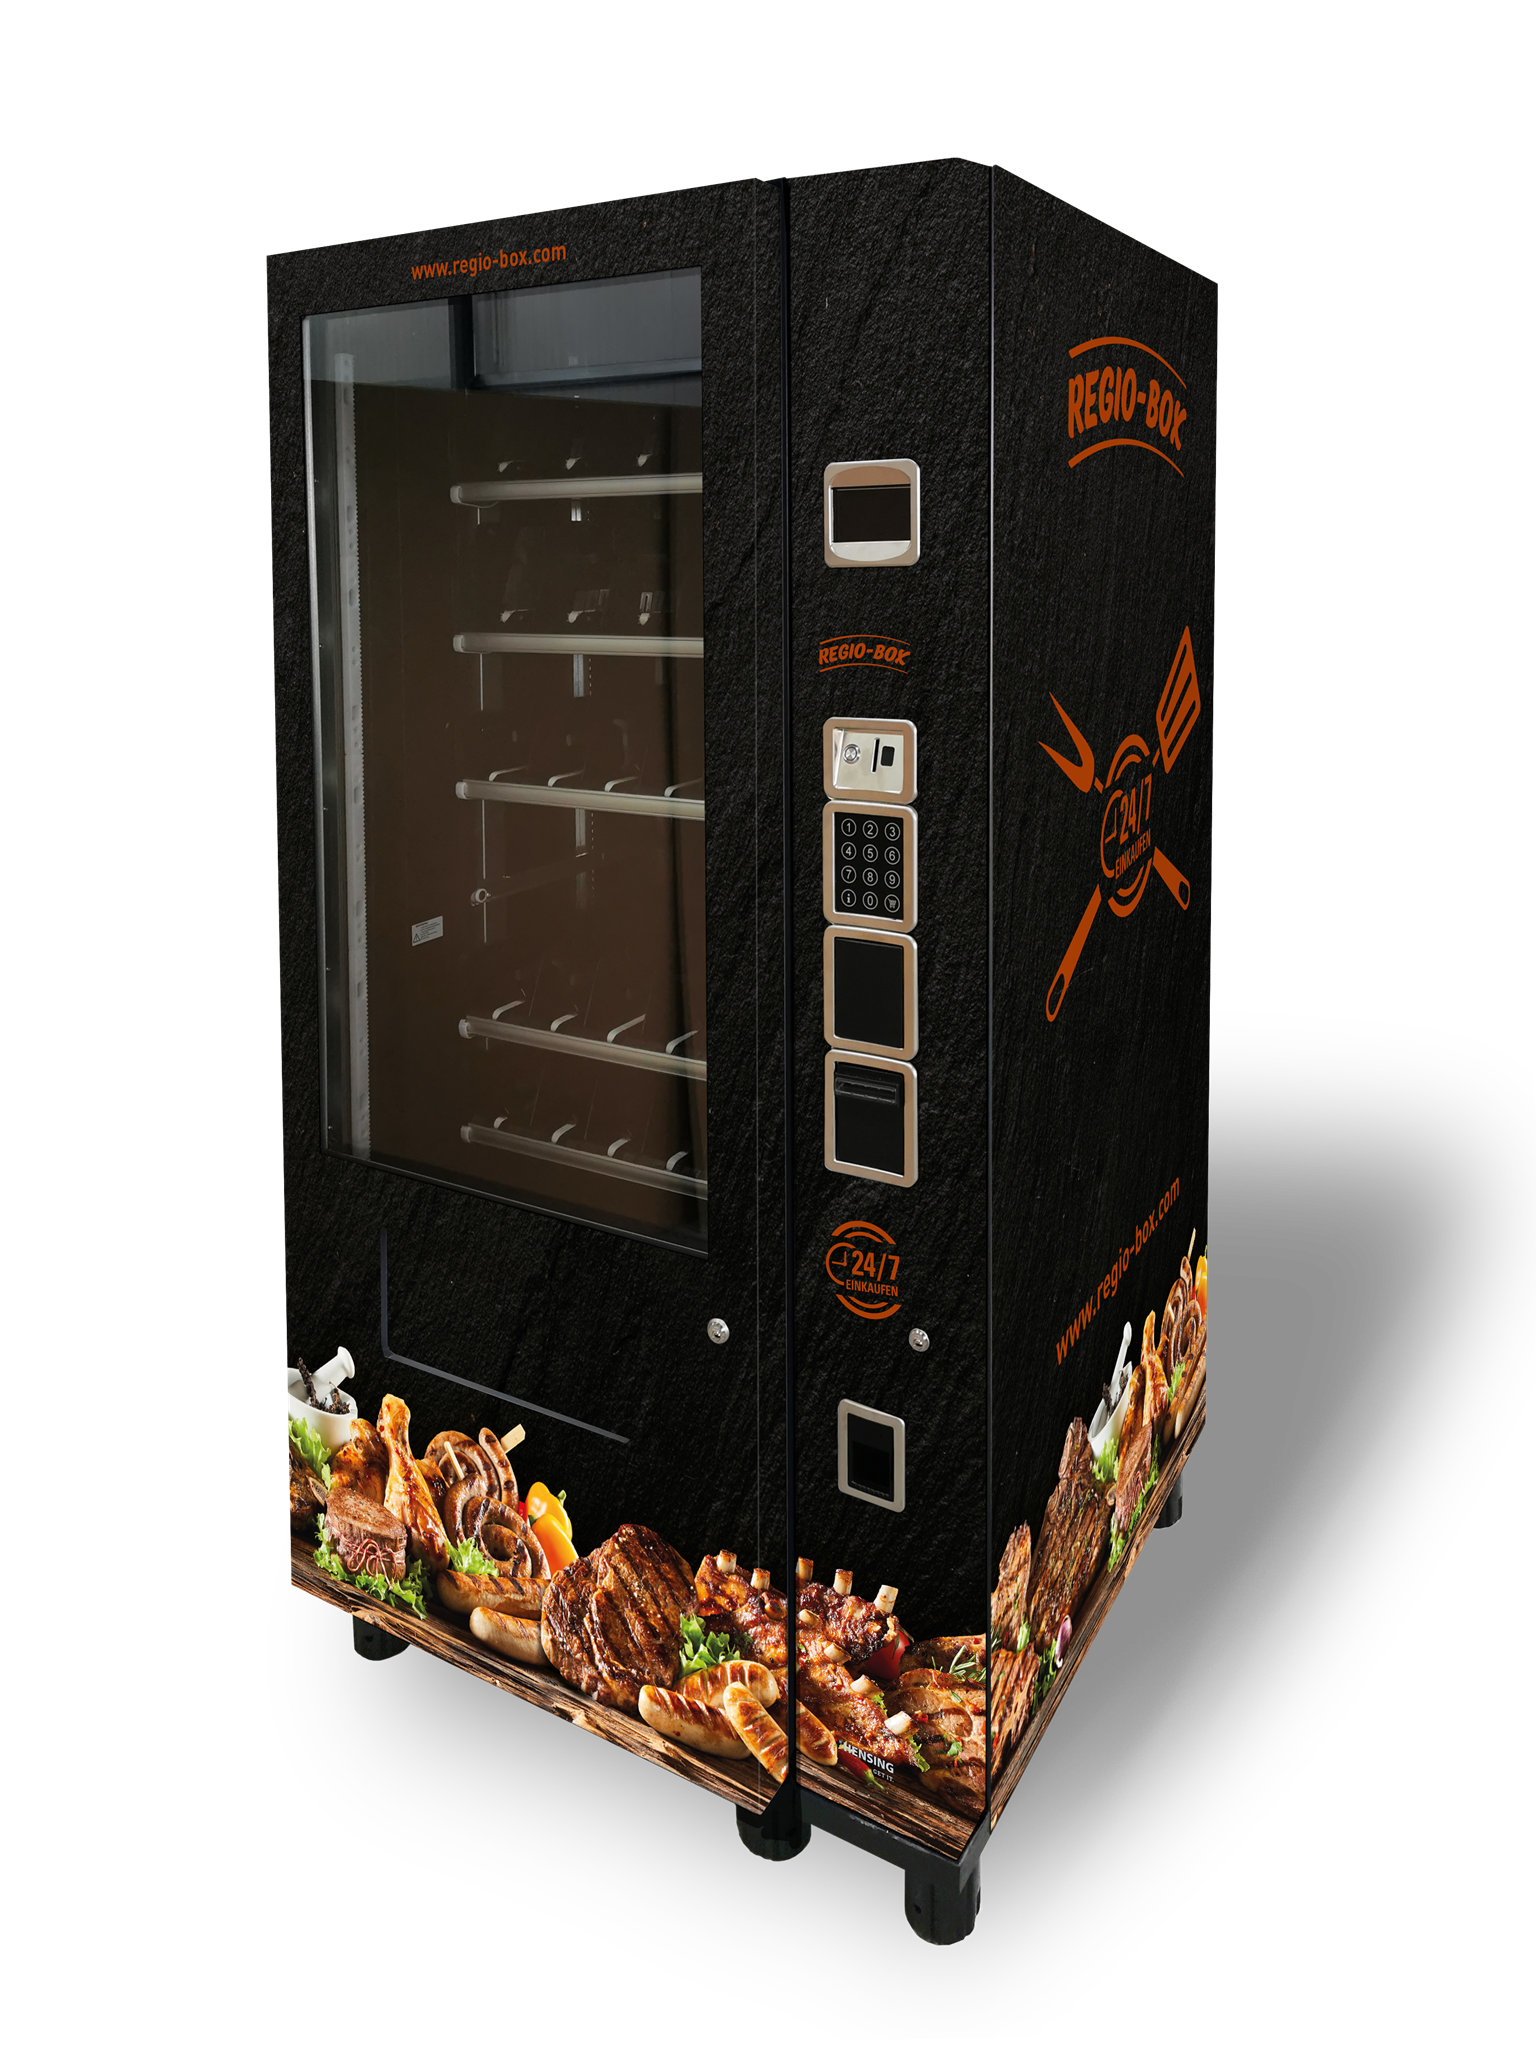 Regio-Box Grillfleisch-Automat